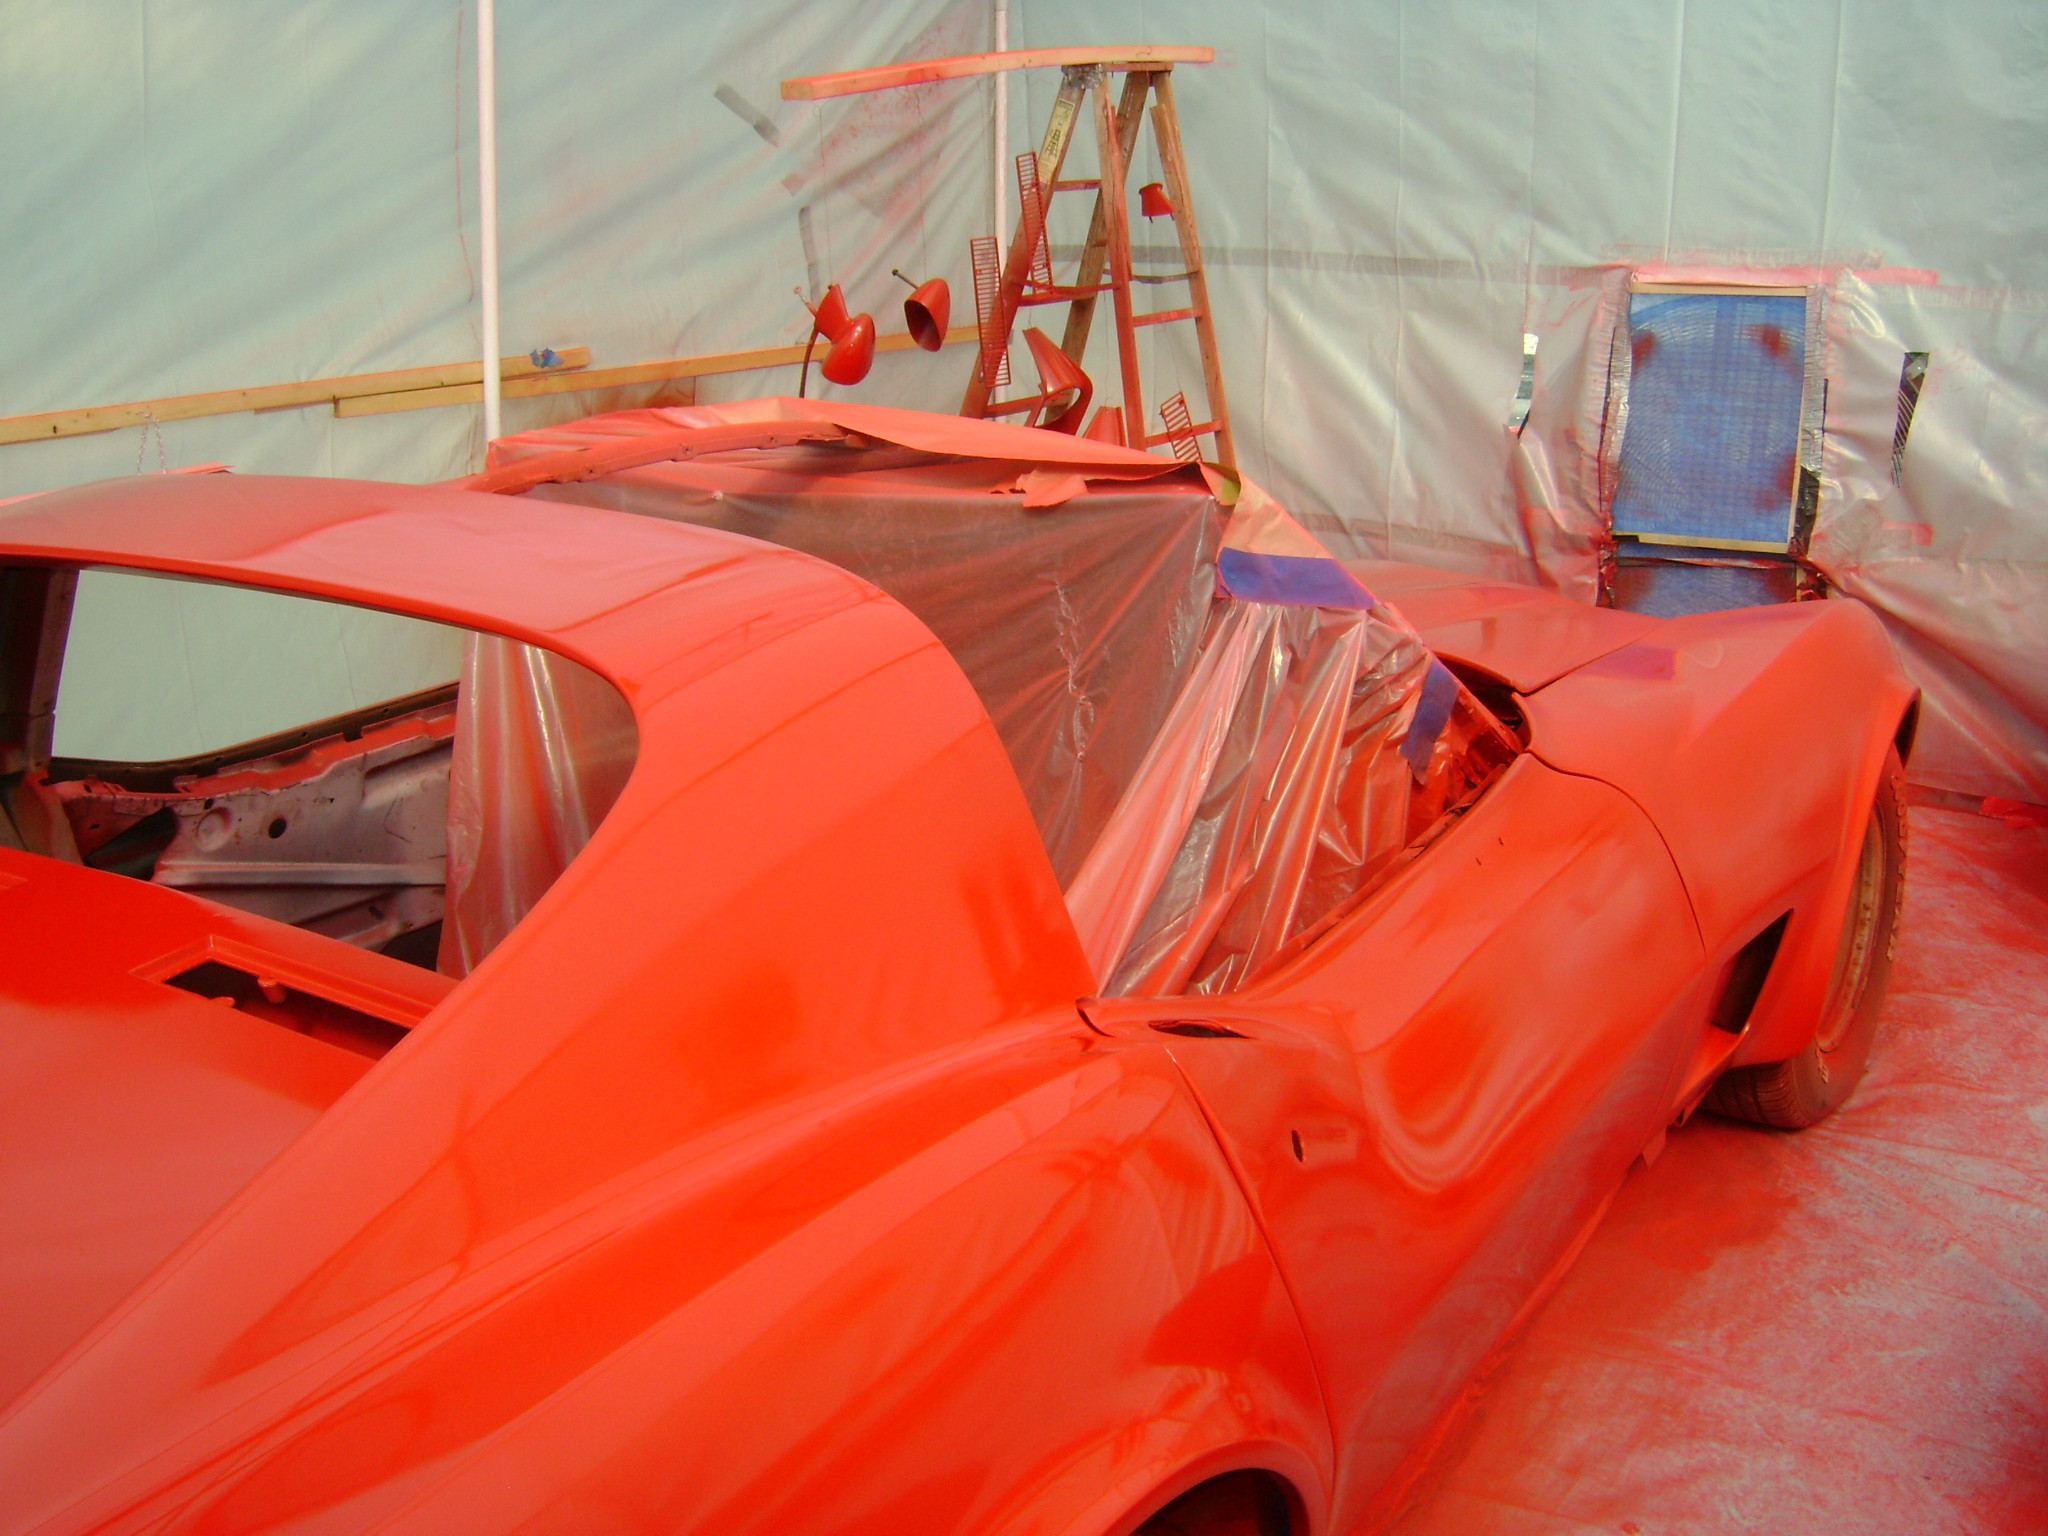 Best ideas about DIY Car Paint
. Save or Pin My DIY paint booth CorvetteForum Chevrolet Corvette Now.